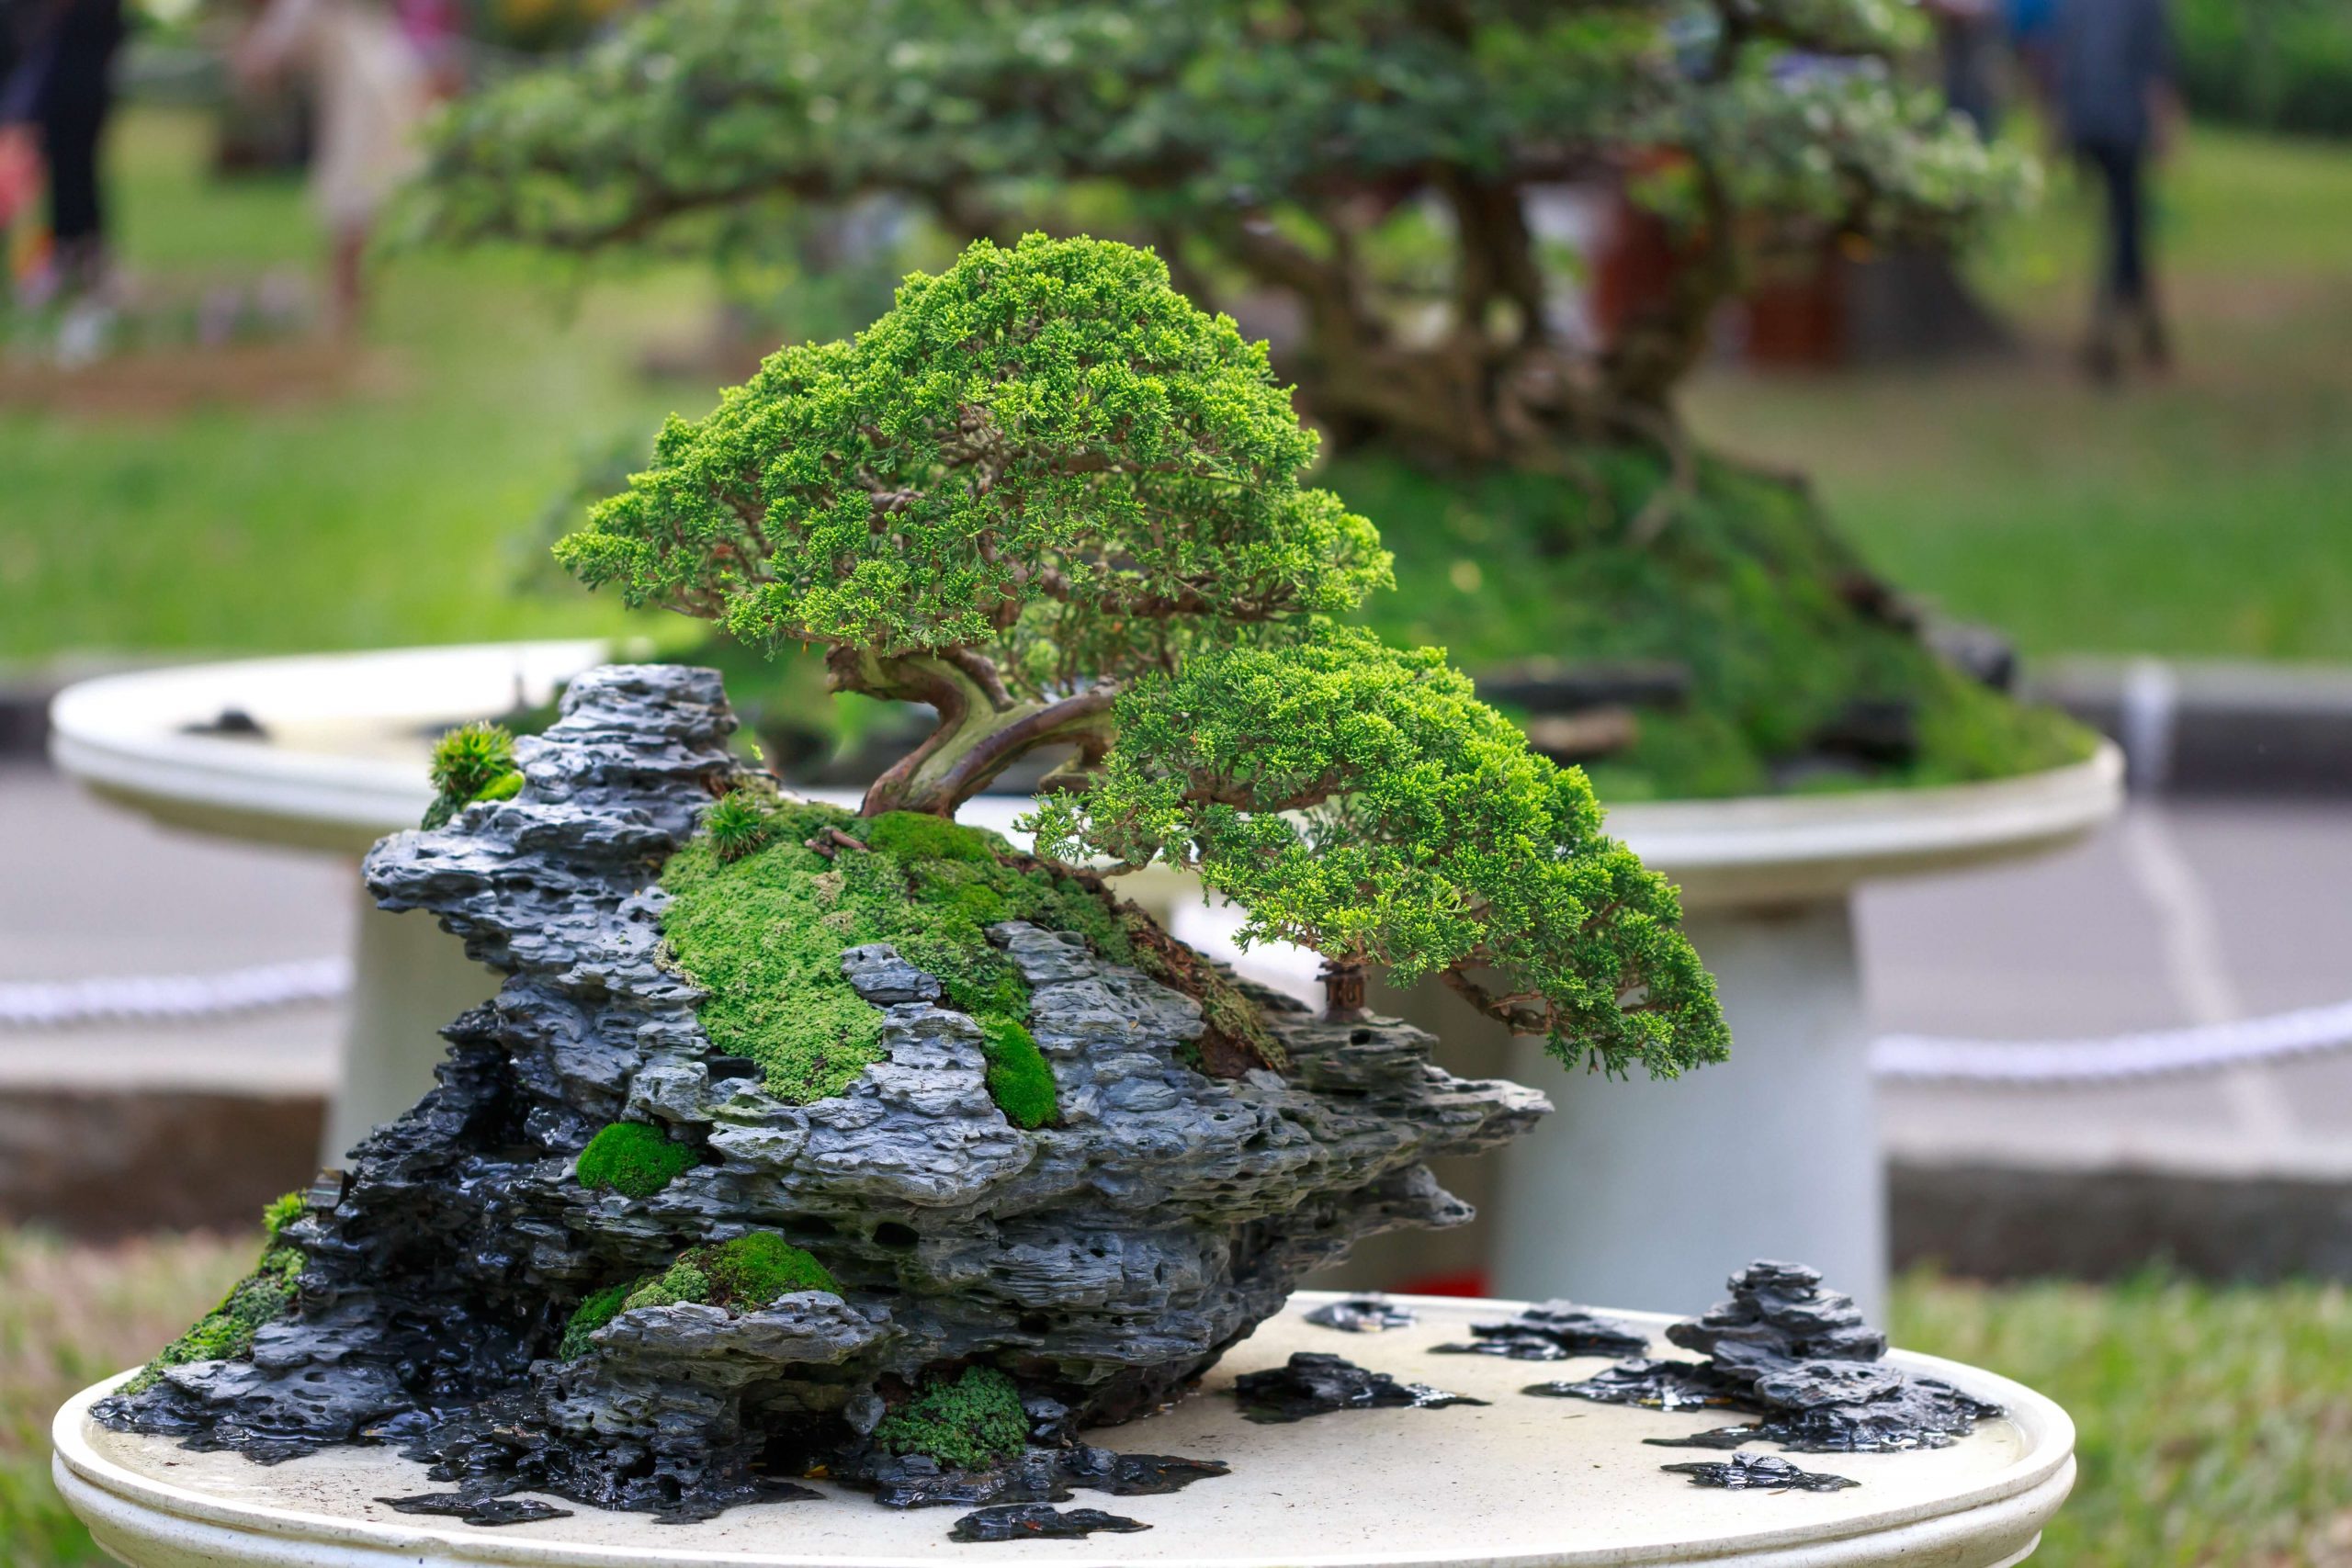 Chia sẻ cách chọn đất trồng cây bonsai từ kinh nghiệm thực tế 3